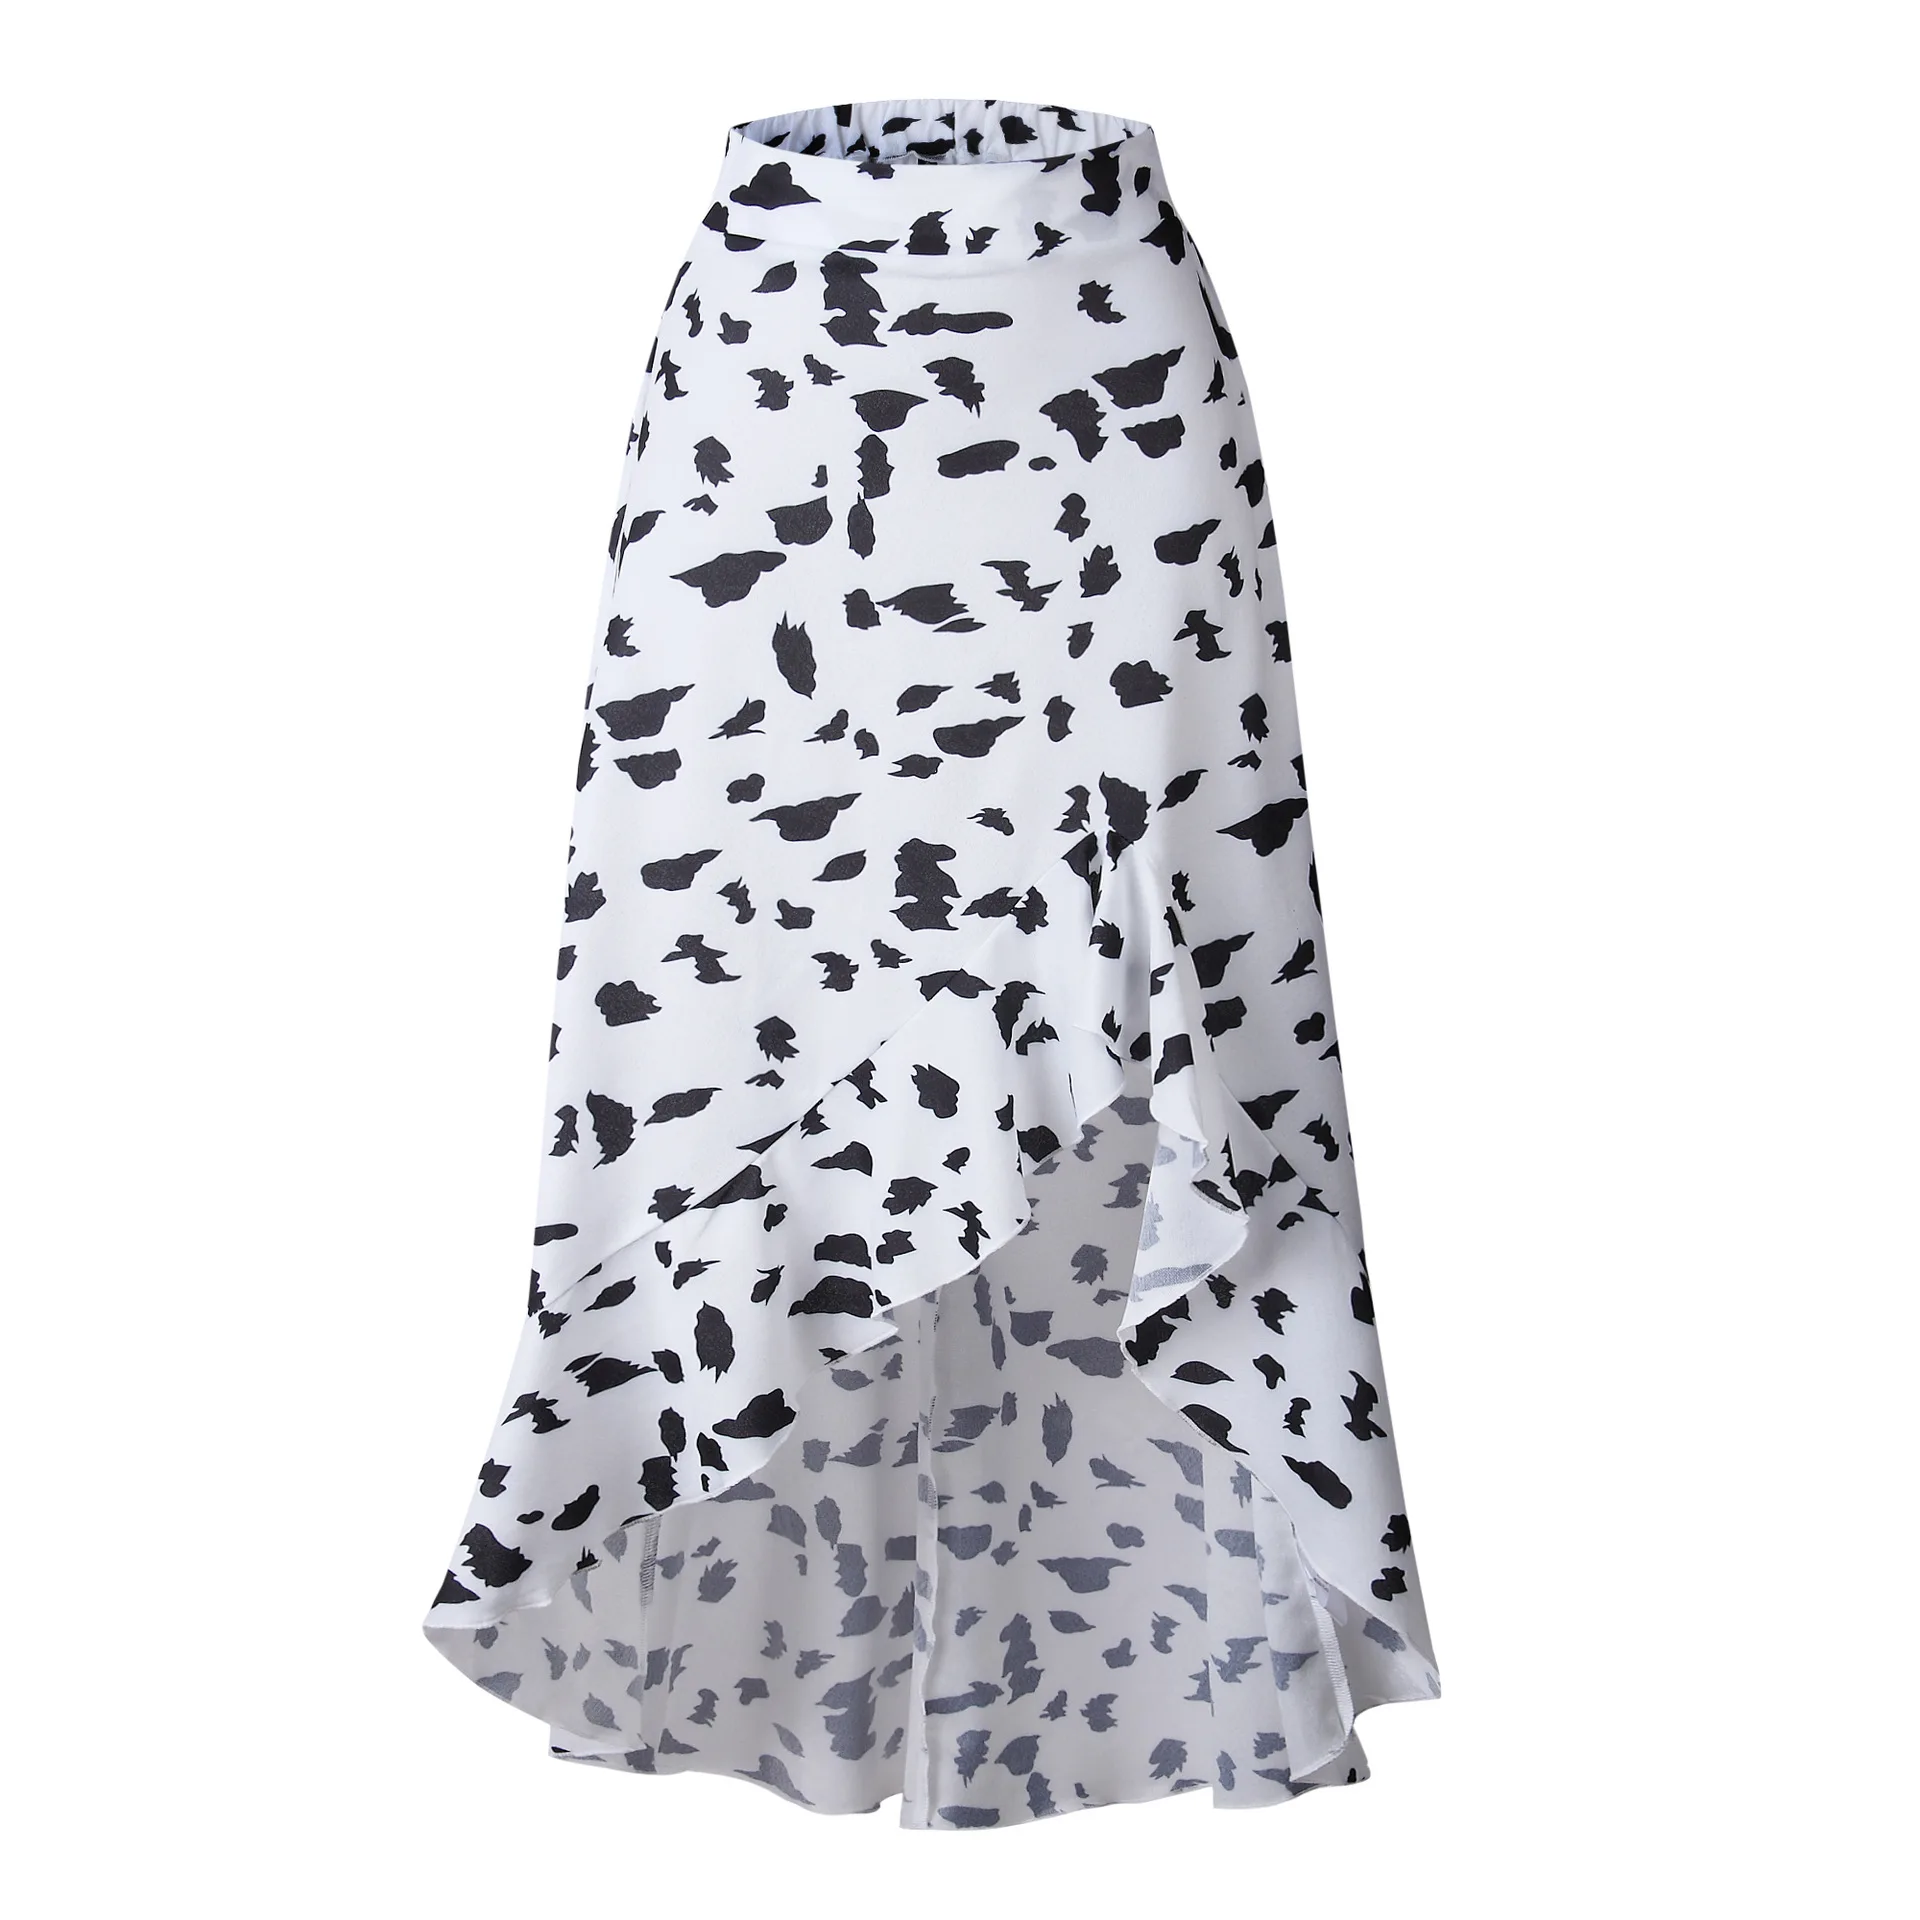 Missufe летние Многослойные Шорты с высокой талией и оборками Femmes короткая однотонная тонкая мини-юбка шорты для женщин